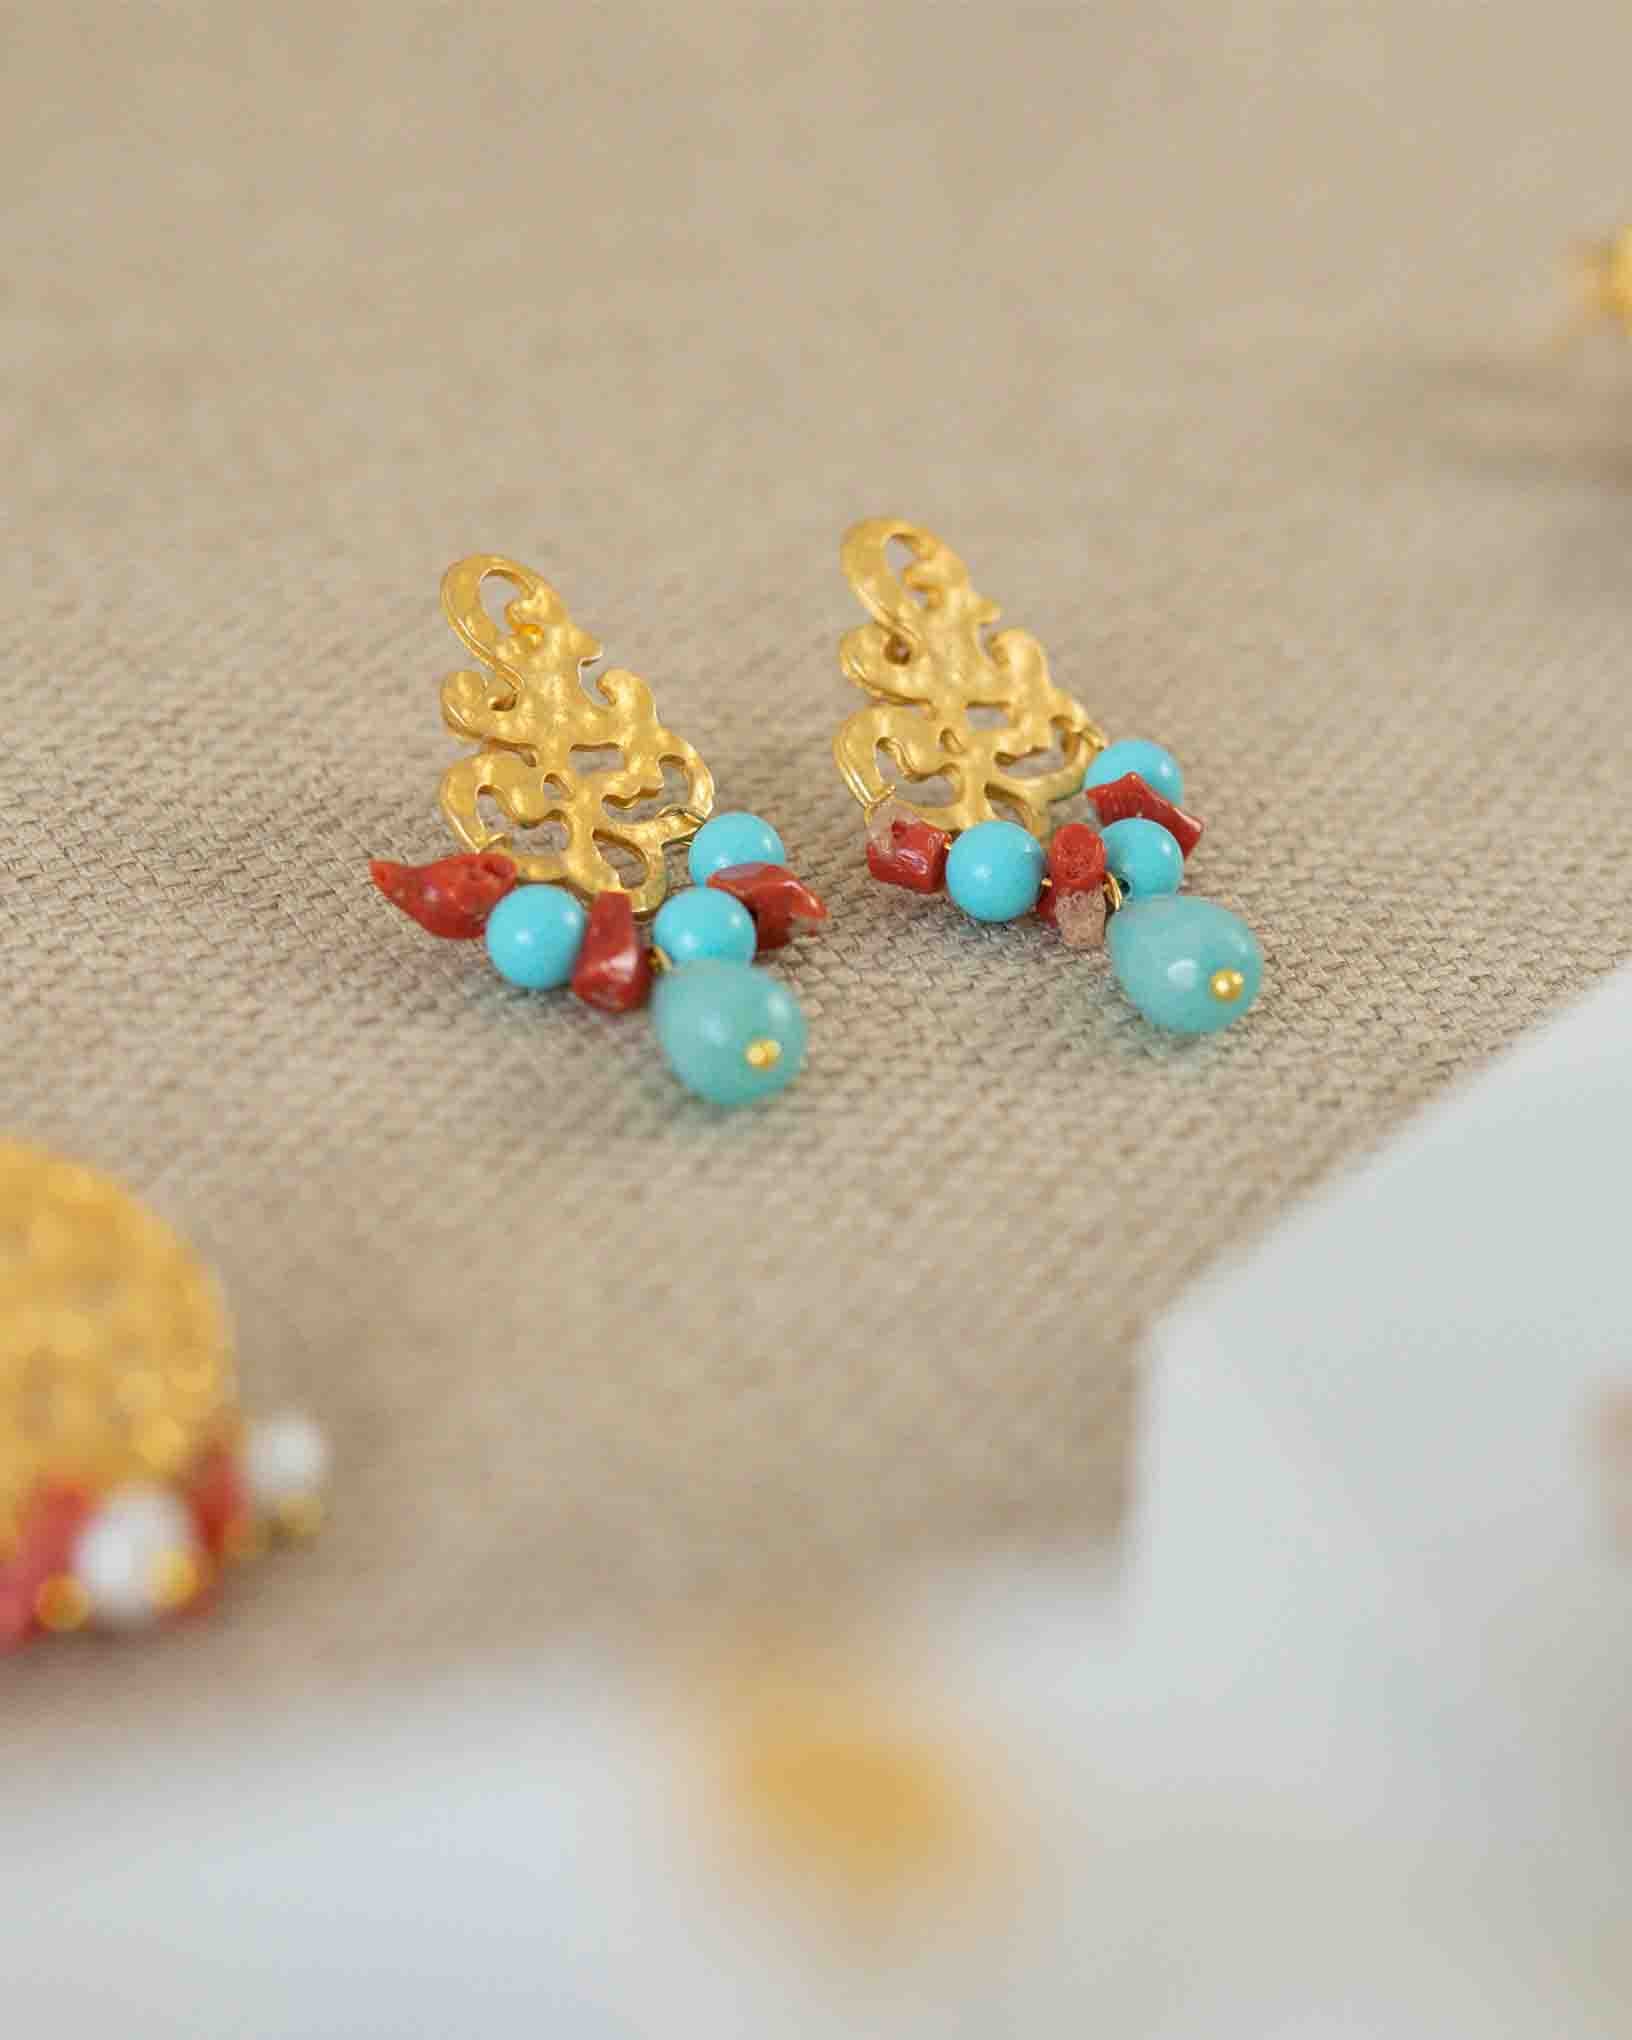 Ohrring Levante aus der Kollektion Perle e Coralli von Donna Rachele Jewelry